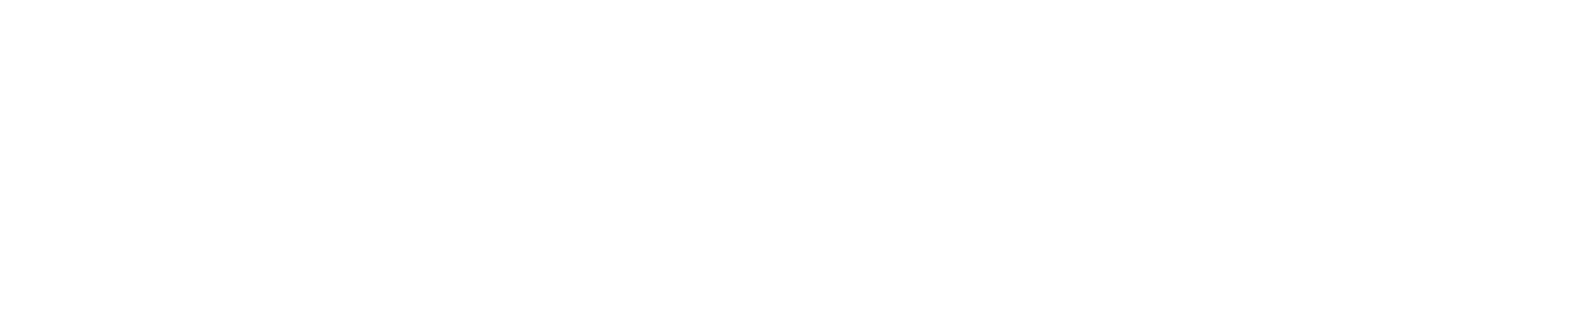 Progenity logo large for dark backgrounds (transparent PNG)